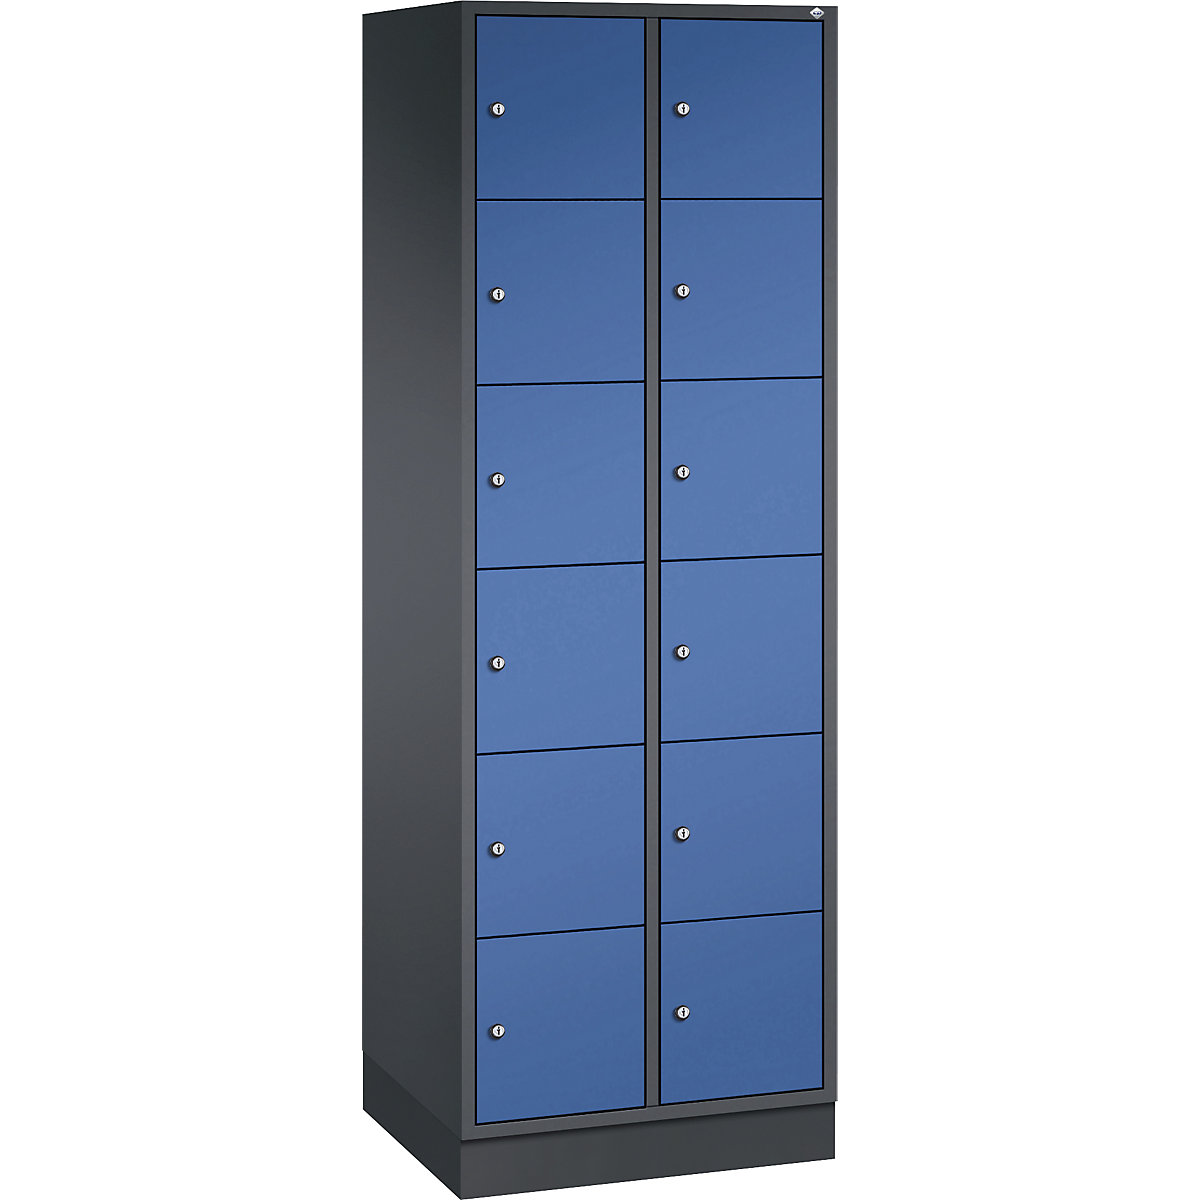 Vestiaire multicases en acier INTRO, casiers hauteur 285 mm – C+P, l x p 620 x 500 mm, 12 casiers, corps gris noir, portes bleu gentiane-14